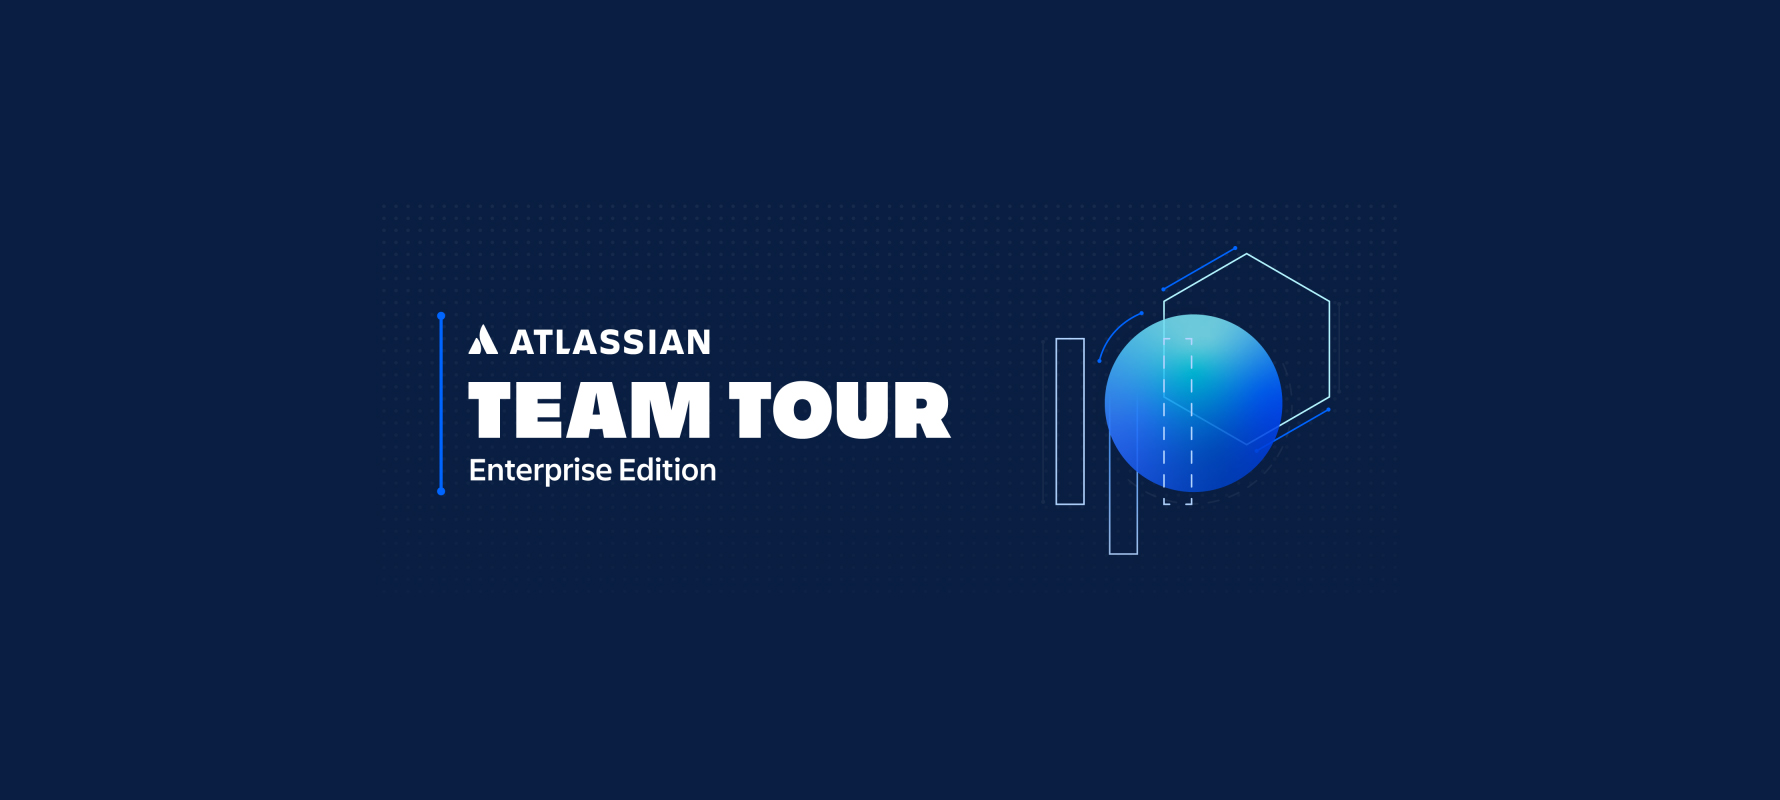 Werbebanner der Atlassian Team Tour März 2020, einfache Symbole auf dunkelblauem Hintergrund.